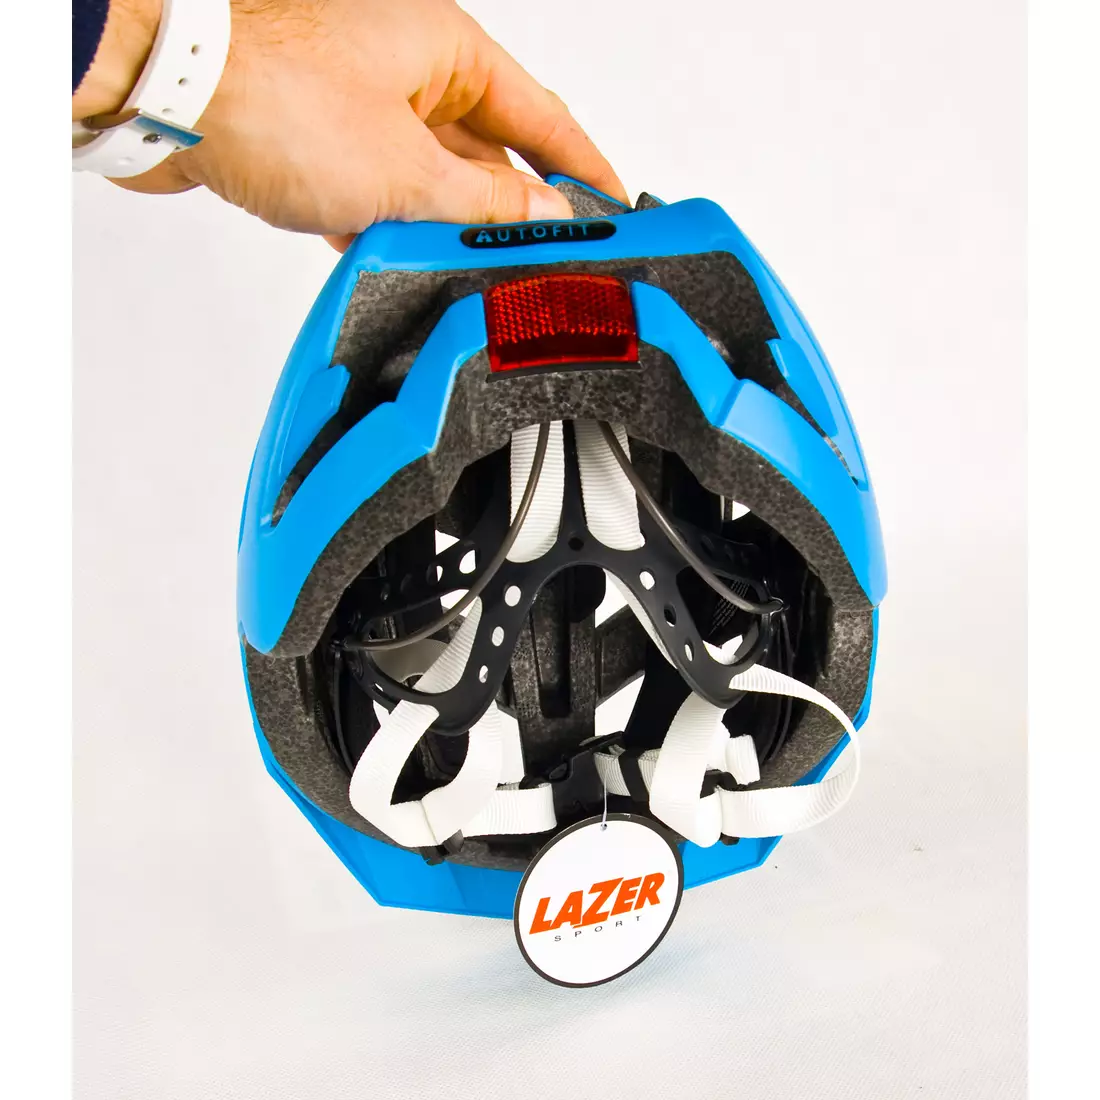 LAZER - ULTRAX MTB-Fahrradhelm, Farbe: Cyanblau